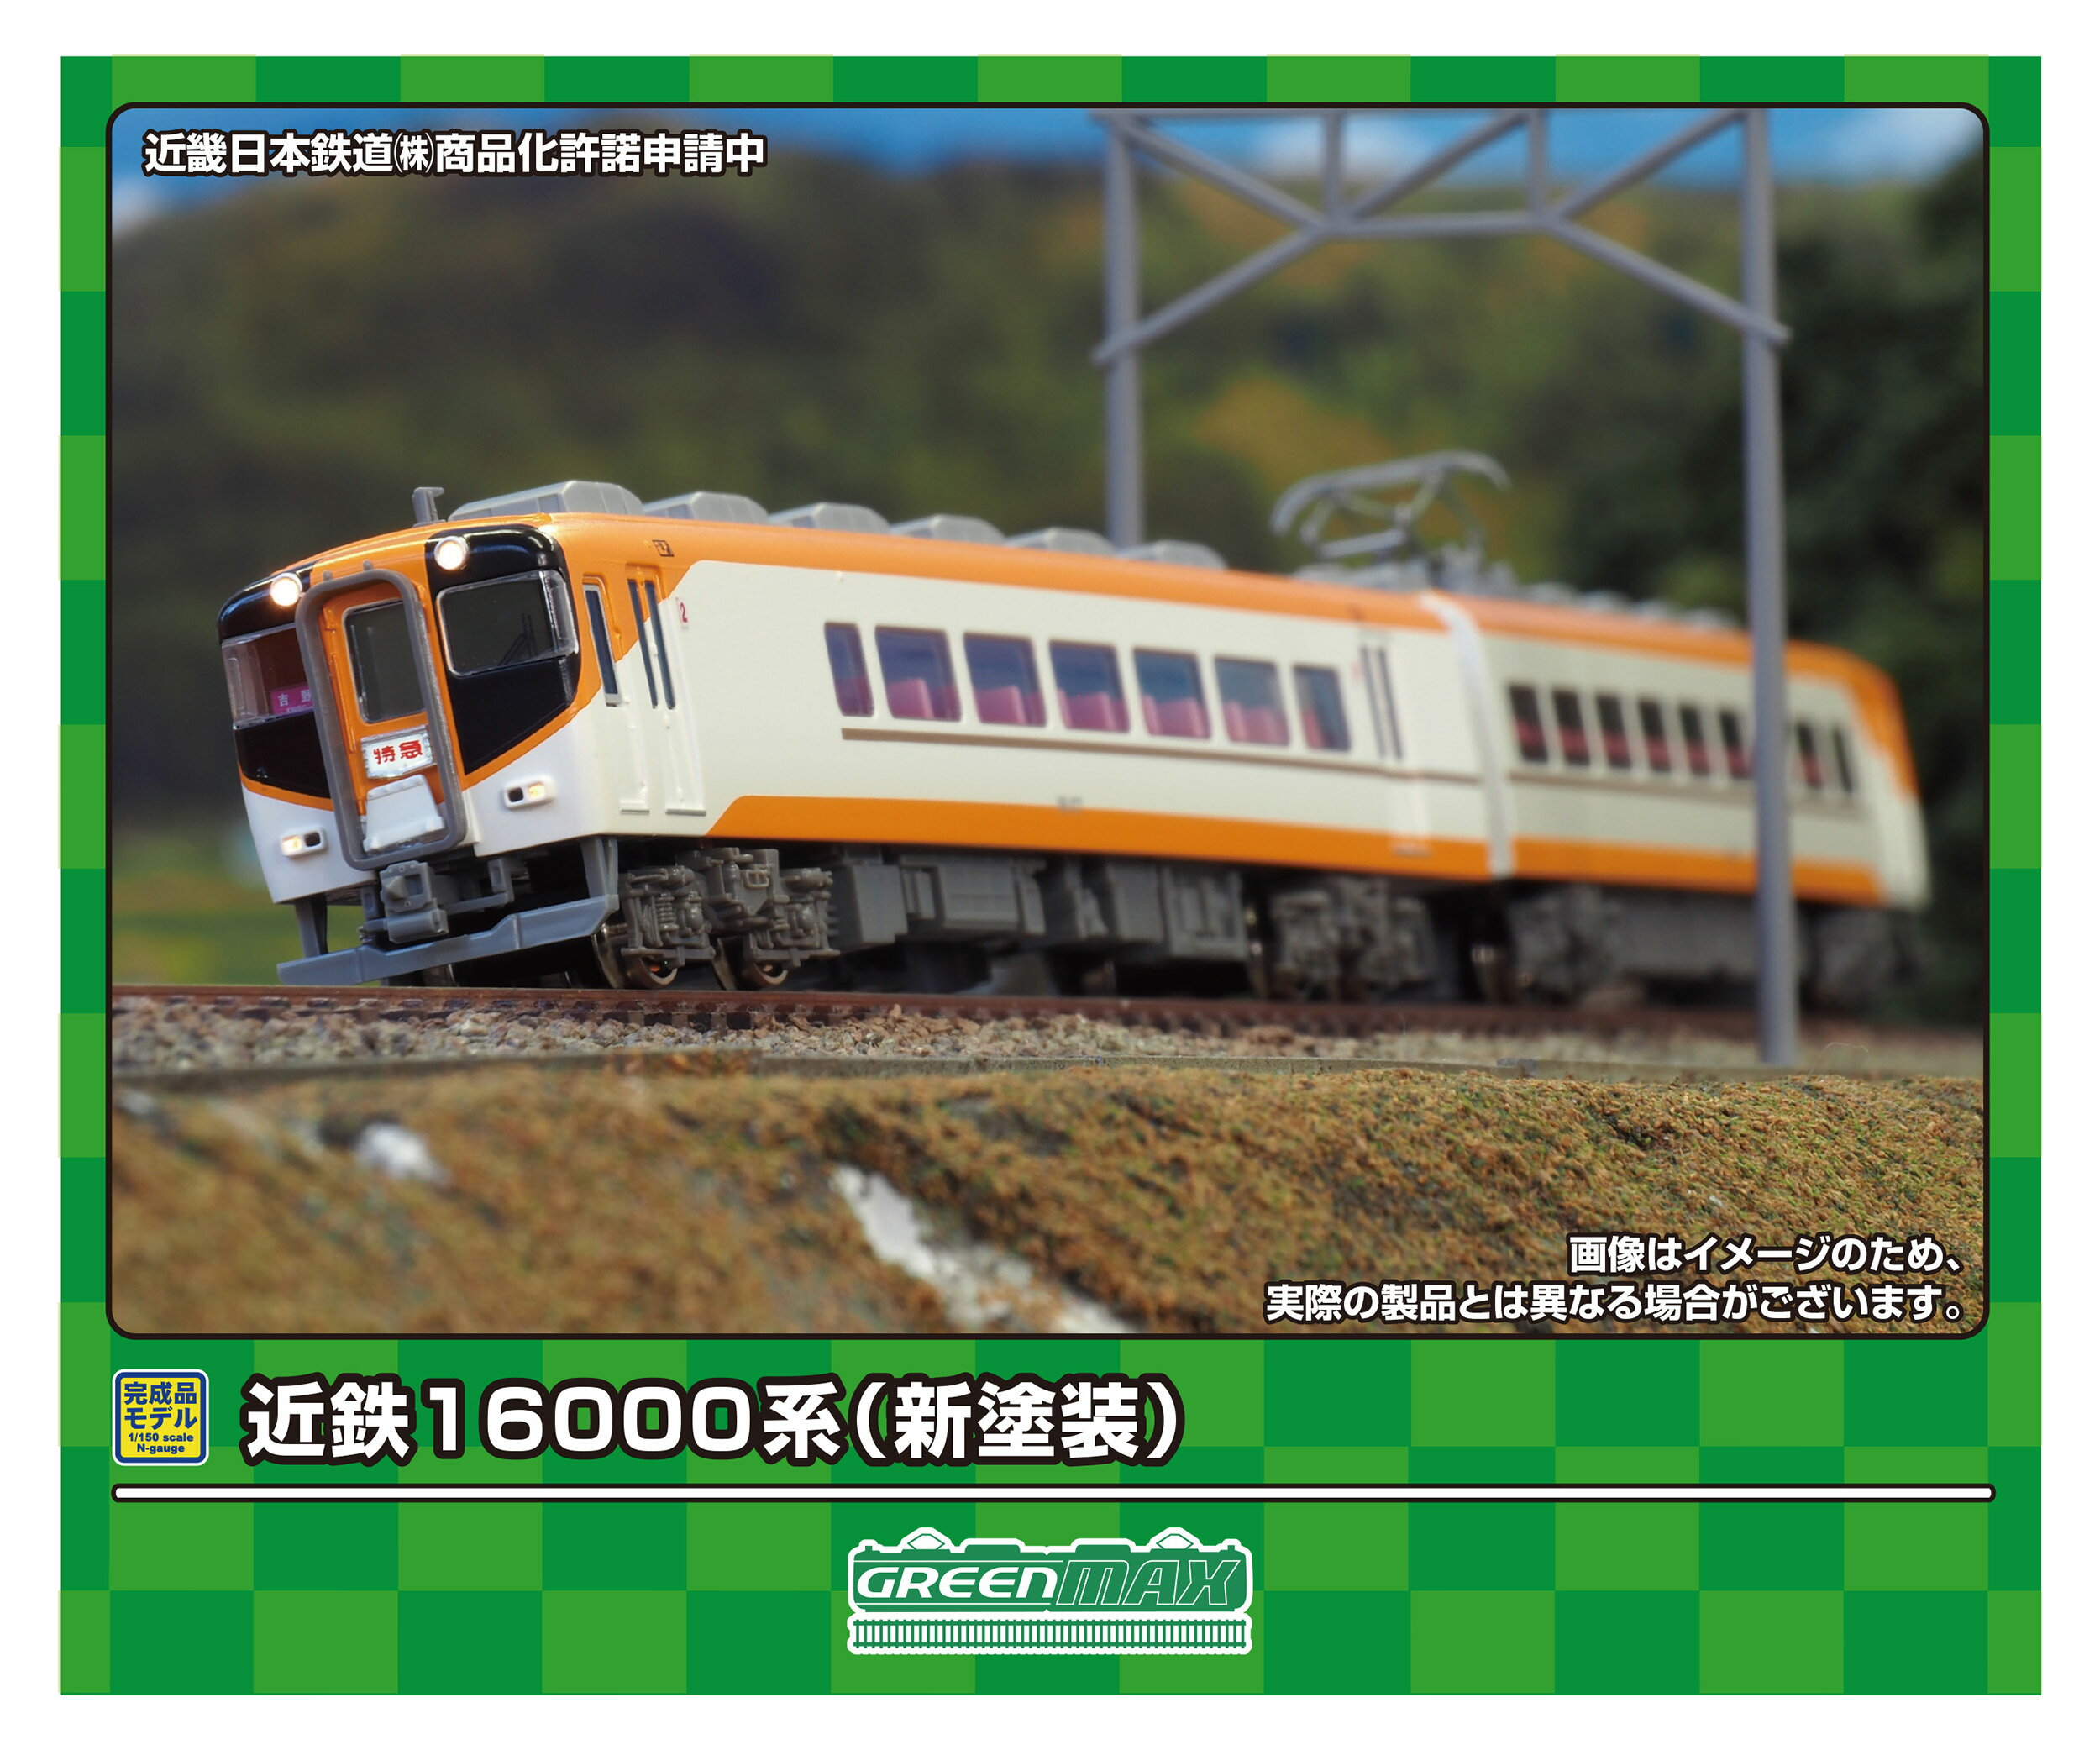 発売日：2024年10月近鉄16000系は、南大阪線・吉野線用の特急車両として1965（昭和40）年に登場しました。2両固定編成8本・4両固定編成1本が在籍していましたが、後継の16400系ACEや16600系Aceの増備に伴い、初期に登場した編成は既に引退しています。2両編成のうち16007編成・16009編成は2015（平成27）年から2016（平成28）年にかけて喫煙室設置工事が行なわれ、側面窓配置が変化するなどの特徴があります。また2016（平成28）年9月から順次塗装変更が行われました。■南大阪線・吉野線の特急列車で活躍する近鉄16000系新塗装■前面種別（特急）、車両番号、座席番号表示は印刷済み■ステッカーが付属し、行先表示、号車表示、副票を収録■列車無線アンテナ、ヒューズボックス、前面渡り板、前面貫通幌はユーザー取付け■ベンチレーター、臭気抜きは取付済み■ヘッドライト（電球色）、テールライト、前面ヘッドマーク（白色）、通過標識灯（電球色）が点灯■フライホイール付きコアレスモーター動力ユニット搭載※商品の仕様は一部実車と異なる場合があります。前回製品＜31645＞との違い■車両ケースを4Rケースに変更近畿日本鉄道（株）商品化許諾申請中パッケージサイズ 4Rケース（縦20.2cm×横18.8cm×厚さ3cm）※画像はイメージです。実際の商品とは異なる場合があります　&copy;GREENMAX31923　